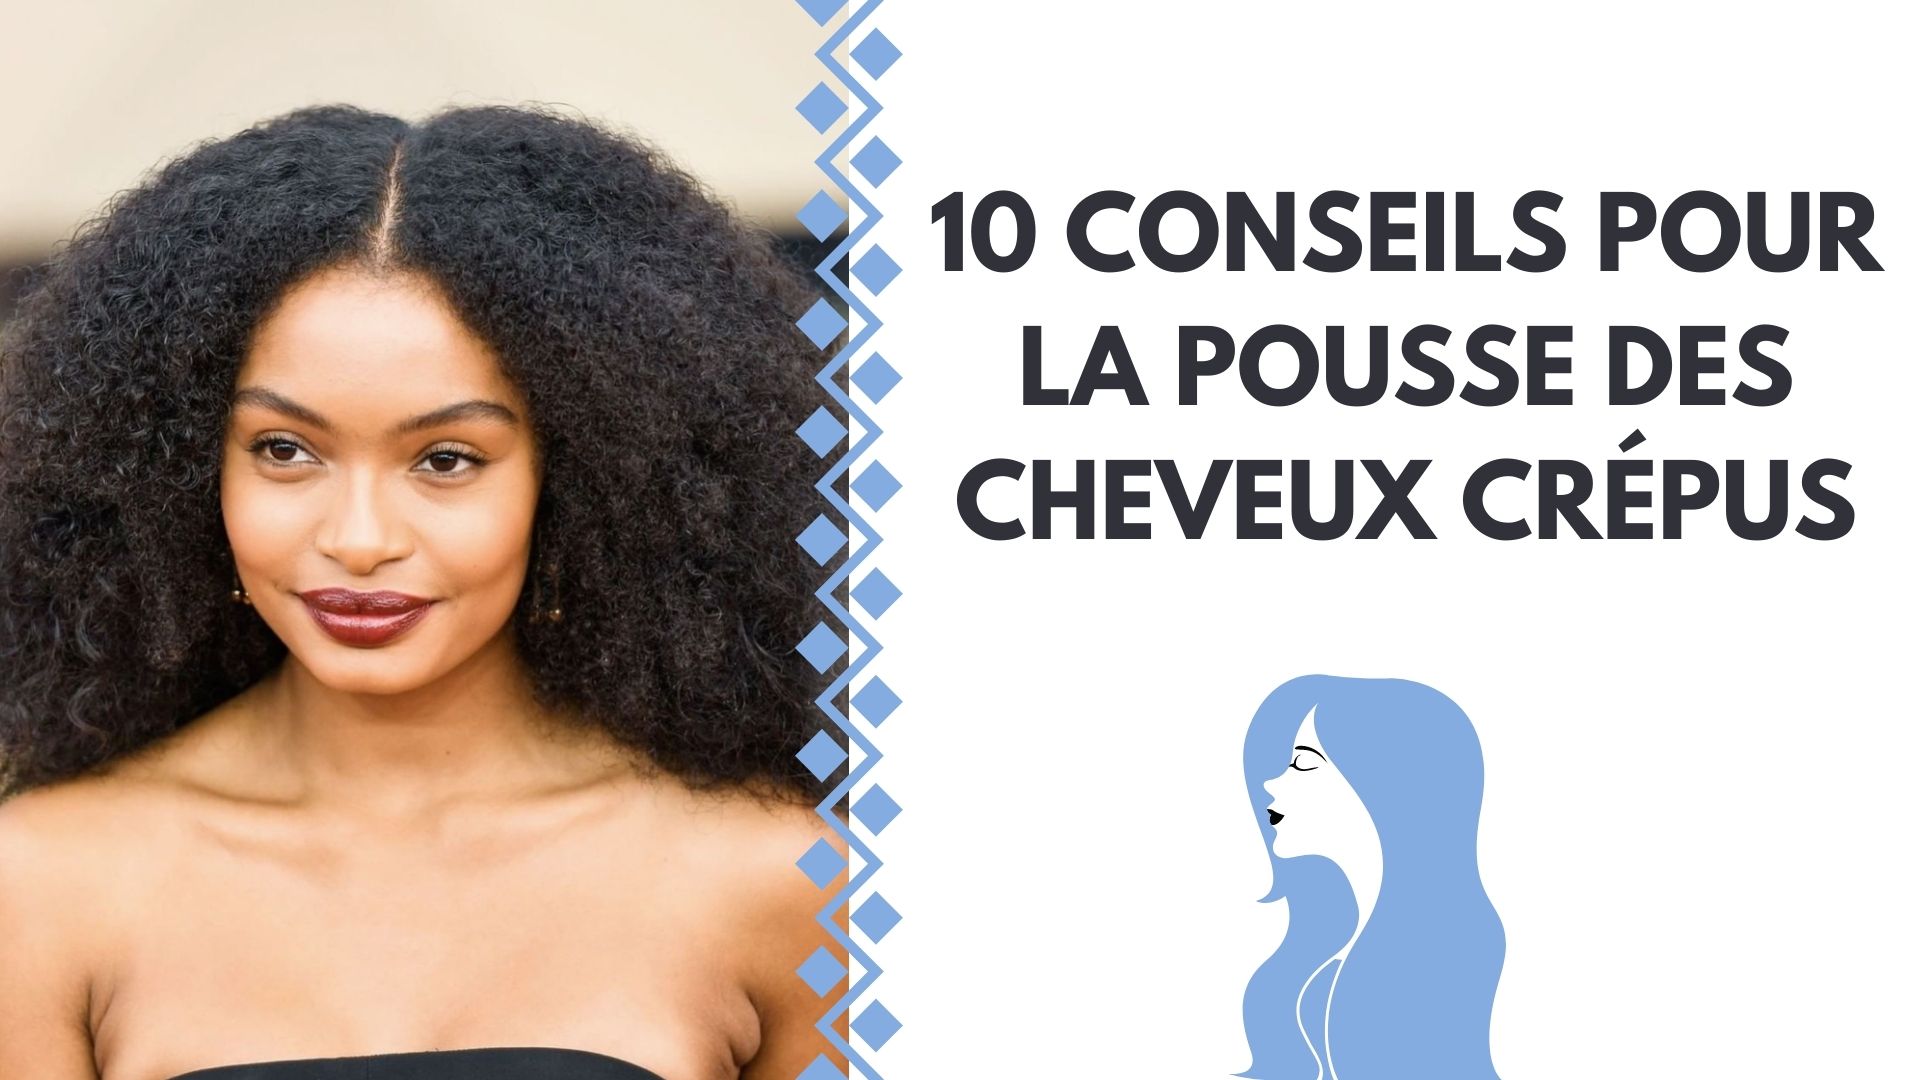 10 CONSEILS POUR LA POUSSE DES CHEVEUX CRÉPUS